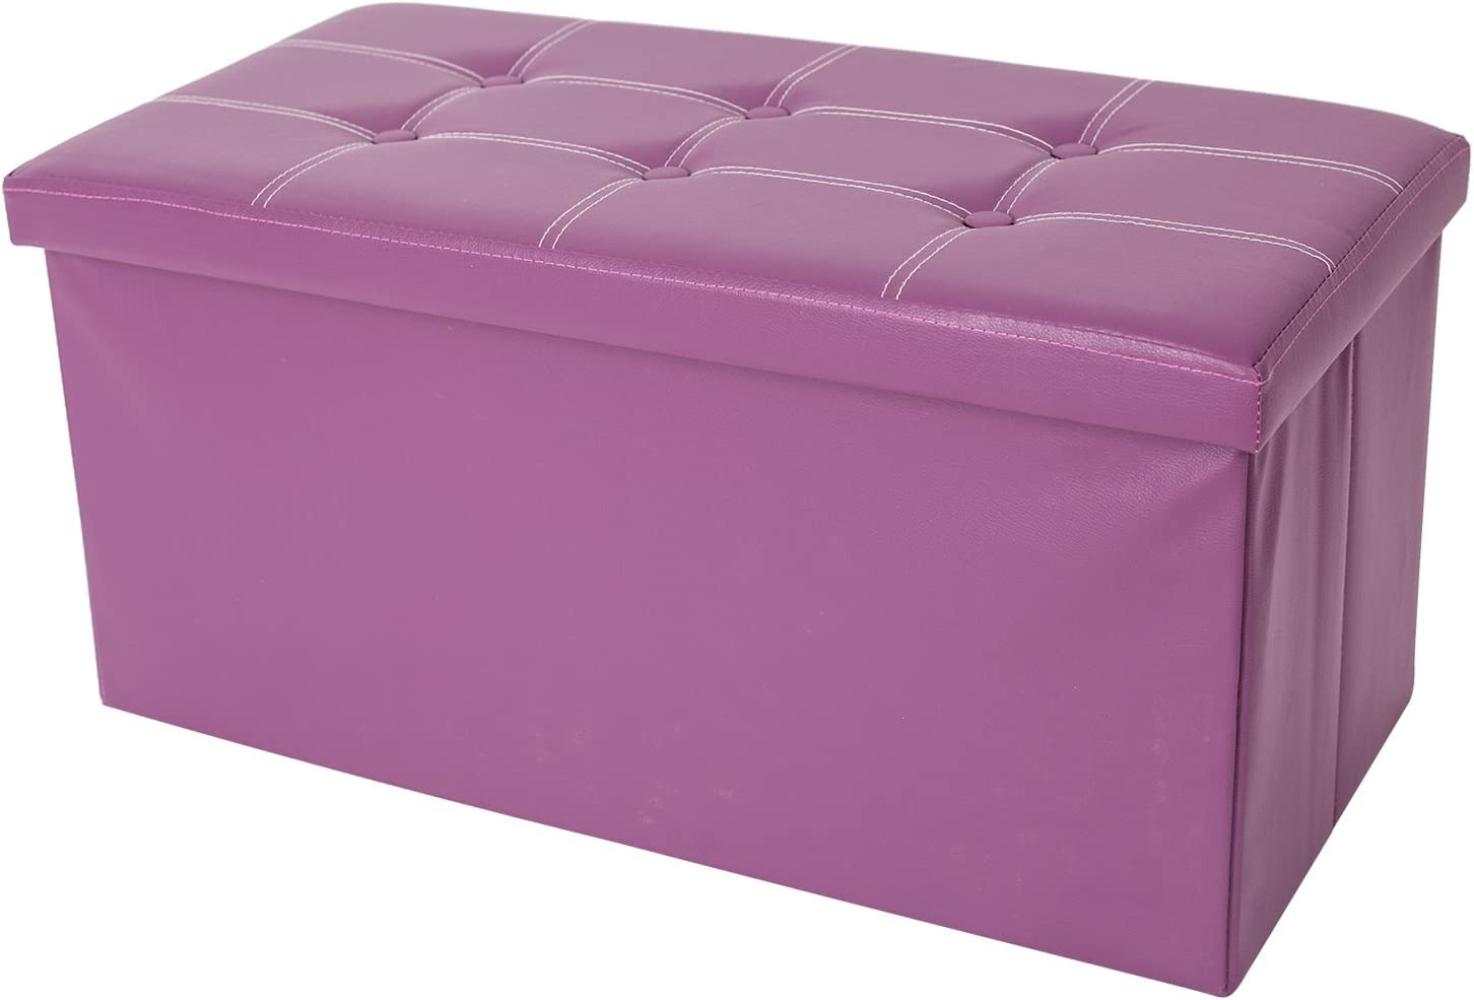 Rebecca Mobili Fußbank Puff, Aufbewahrungsbox mit Stauraum, rechteckige Sitzbank, Violett – Maße: 38 x 76 x 38 cm (HxLxB) - Art. RE4903 Bild 1